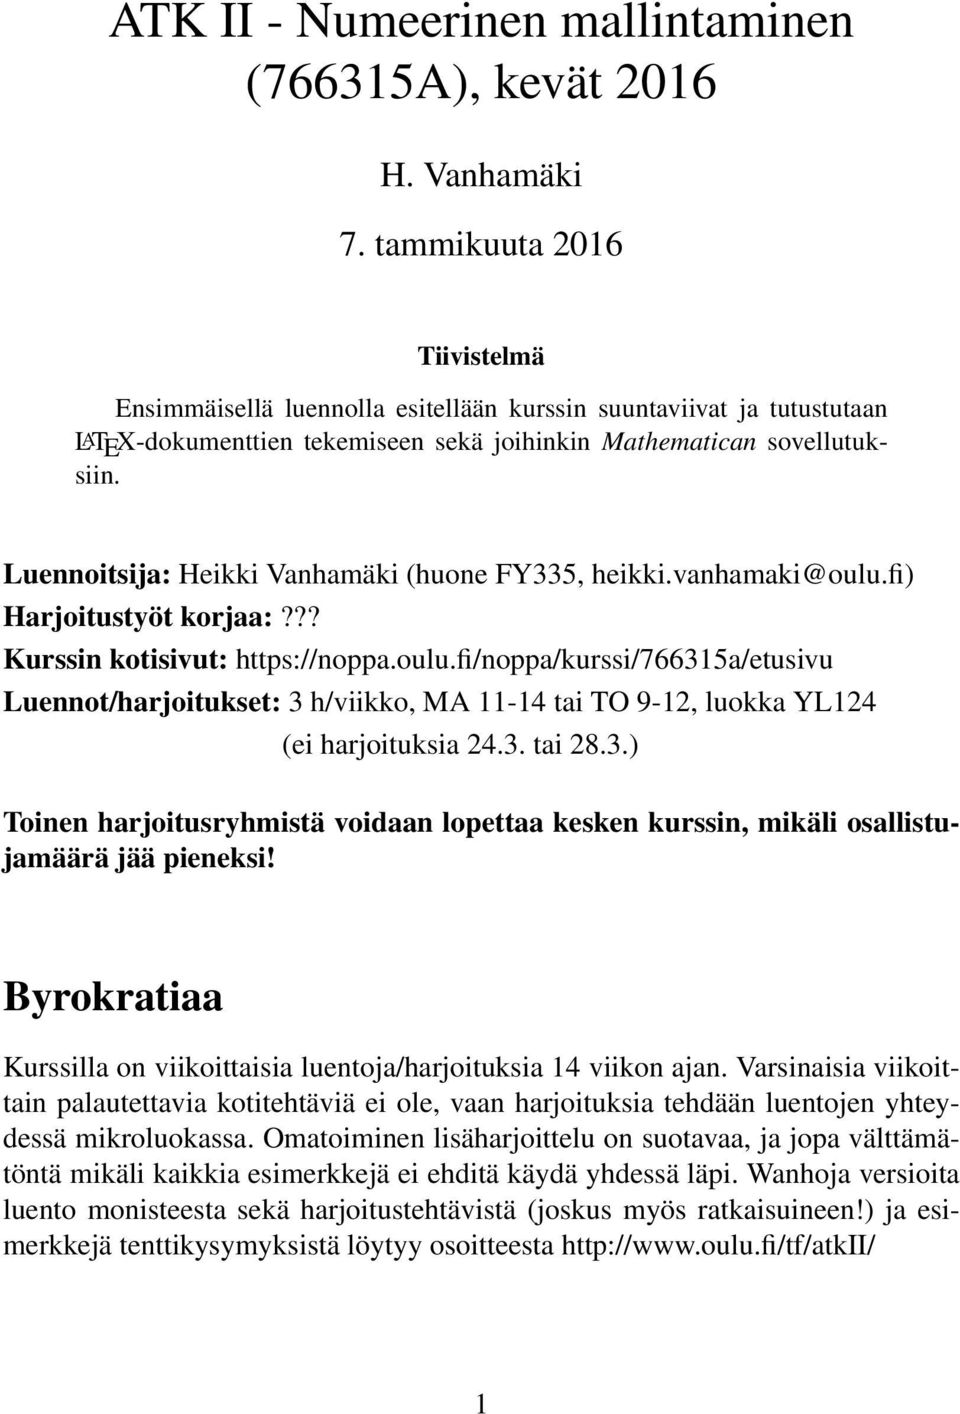 Luennoitsija: Heikki Vanhamäki (huone FY335, heikki.vanhamaki@oulu.fi) Harjoitustyöt korjaa:??? Kurssin kotisivut: https://noppa.oulu.fi/noppa/kurssi/766315a/etusivu Luennot/harjoitukset: 3 h/viikko, MA 11-14 tai TO 9-12, luokka YL124 (ei harjoituksia 24.